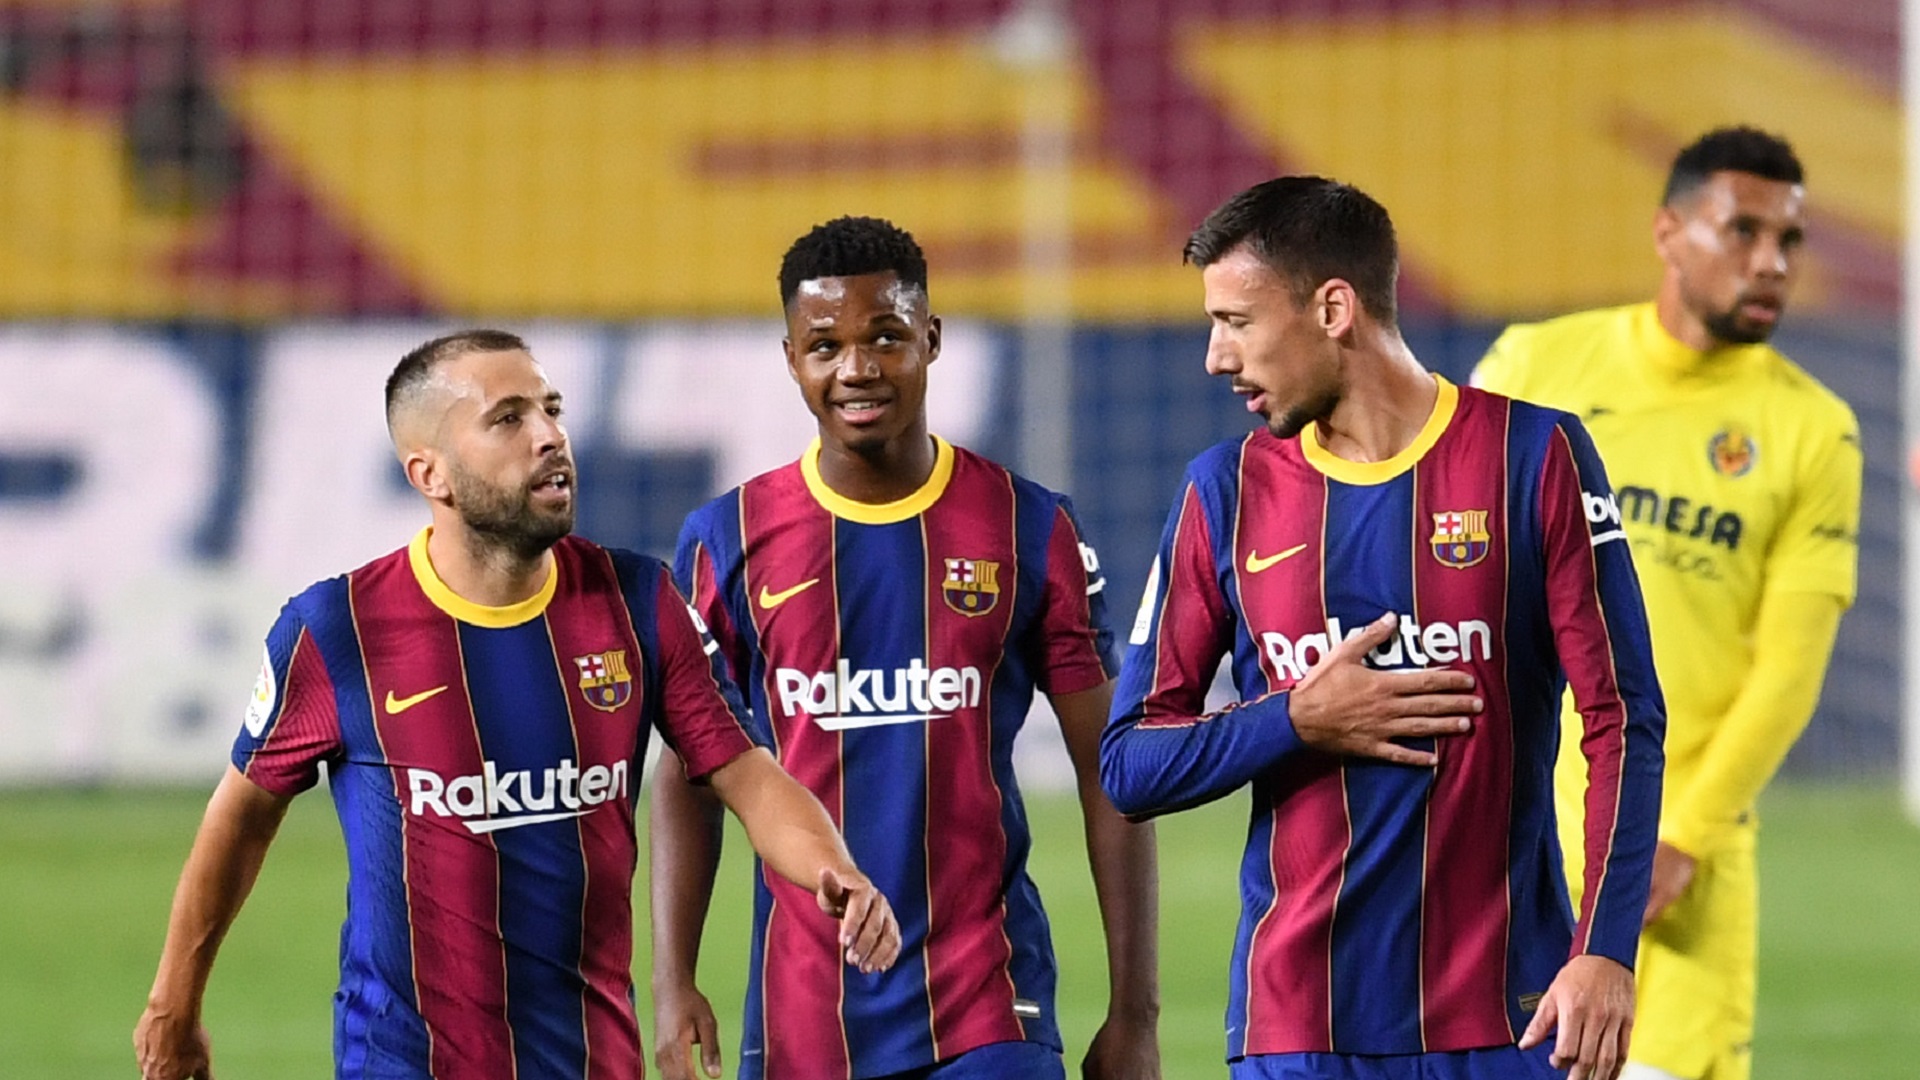 Pour Jordi Alba, le Barça doit s'améliorer